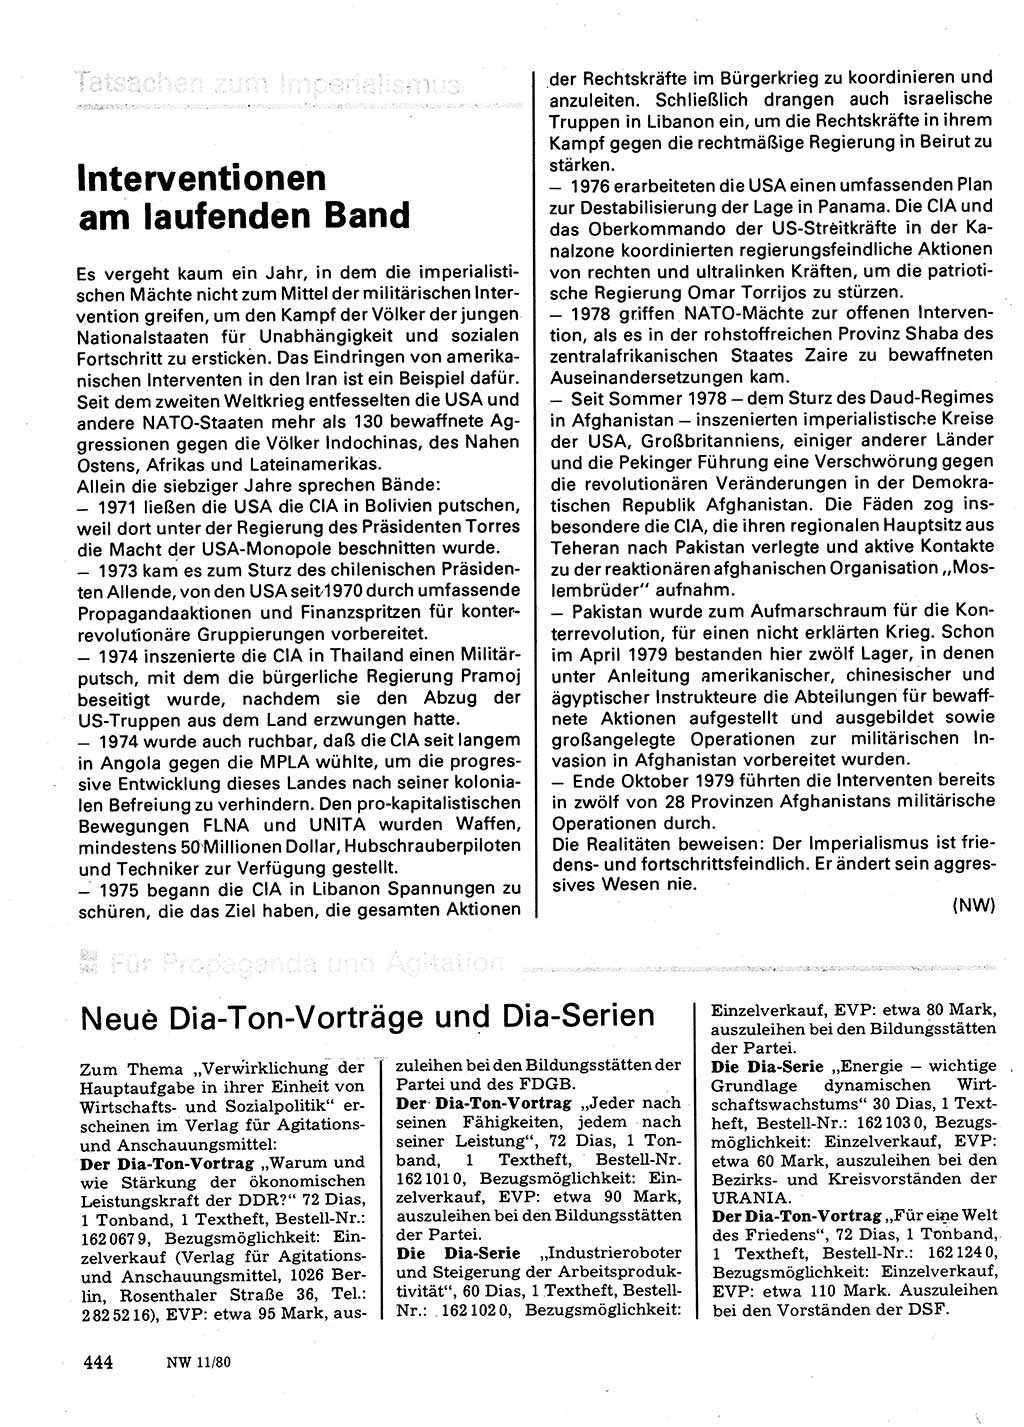 Neuer Weg (NW), Organ des Zentralkomitees (ZK) der SED (Sozialistische Einheitspartei Deutschlands) für Fragen des Parteilebens, 35. Jahrgang [Deutsche Demokratische Republik (DDR)] 1980, Seite 444 (NW ZK SED DDR 1980, S. 444)